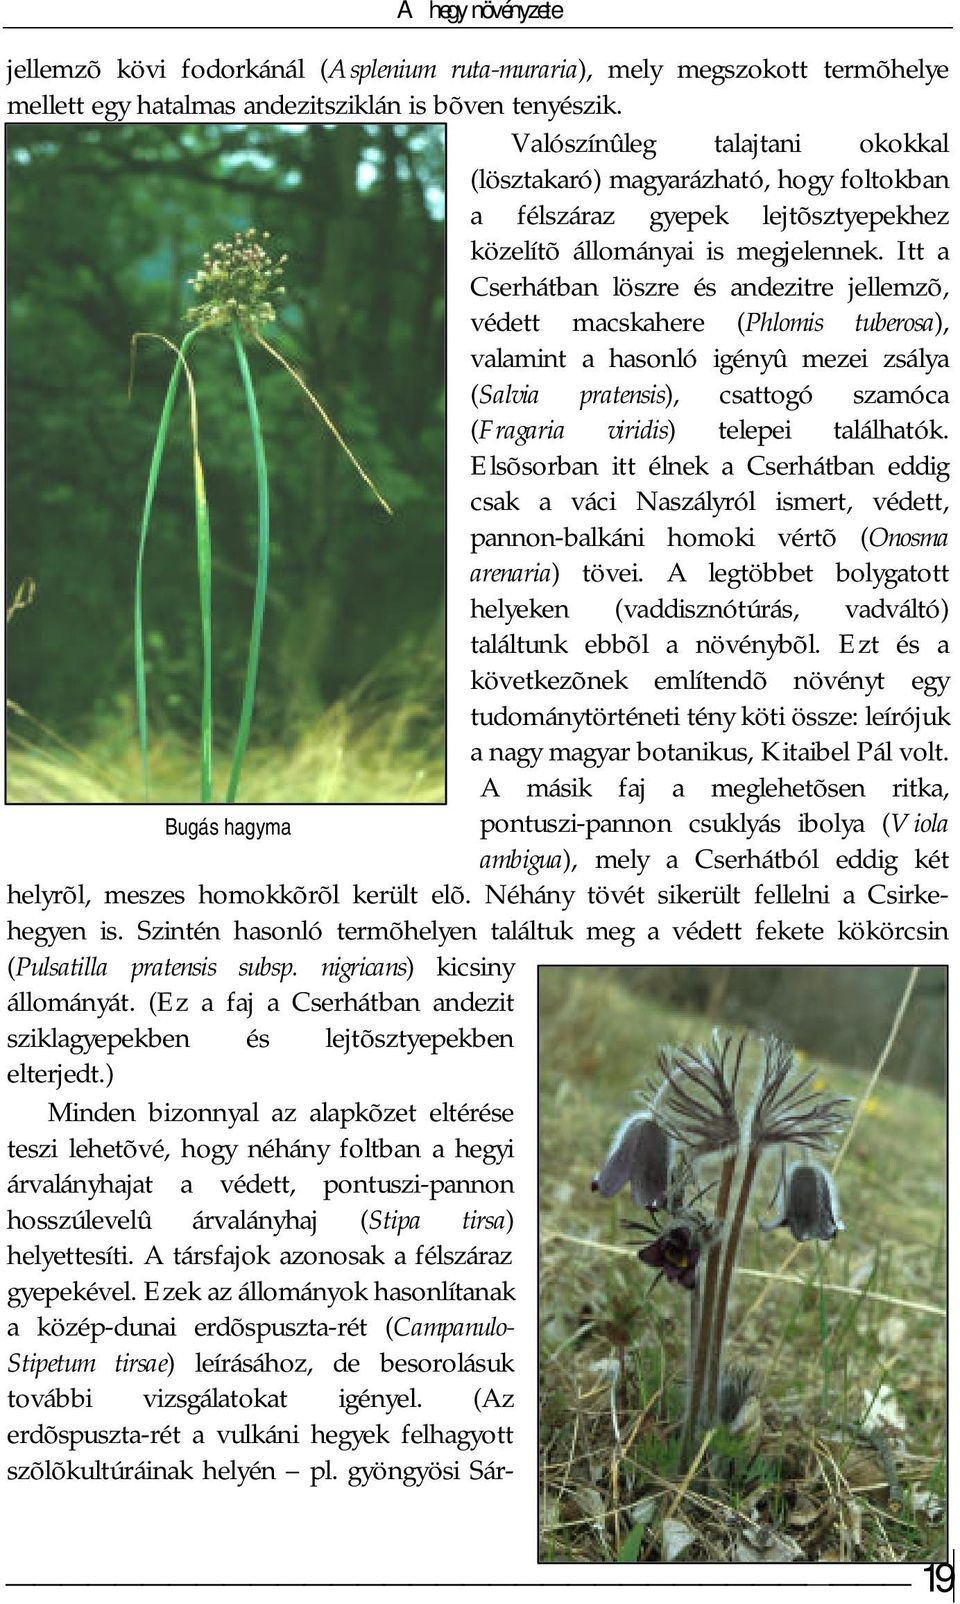 Itt a Cserhátban löszre és andezitre jellemzõ, védett macskahere (Phlomis tuberosa), valamint a hasonló igényû mezei zsálya (Salvia pratensis), csattogó szamóca (Fragaria viridis) telepei találhatók.